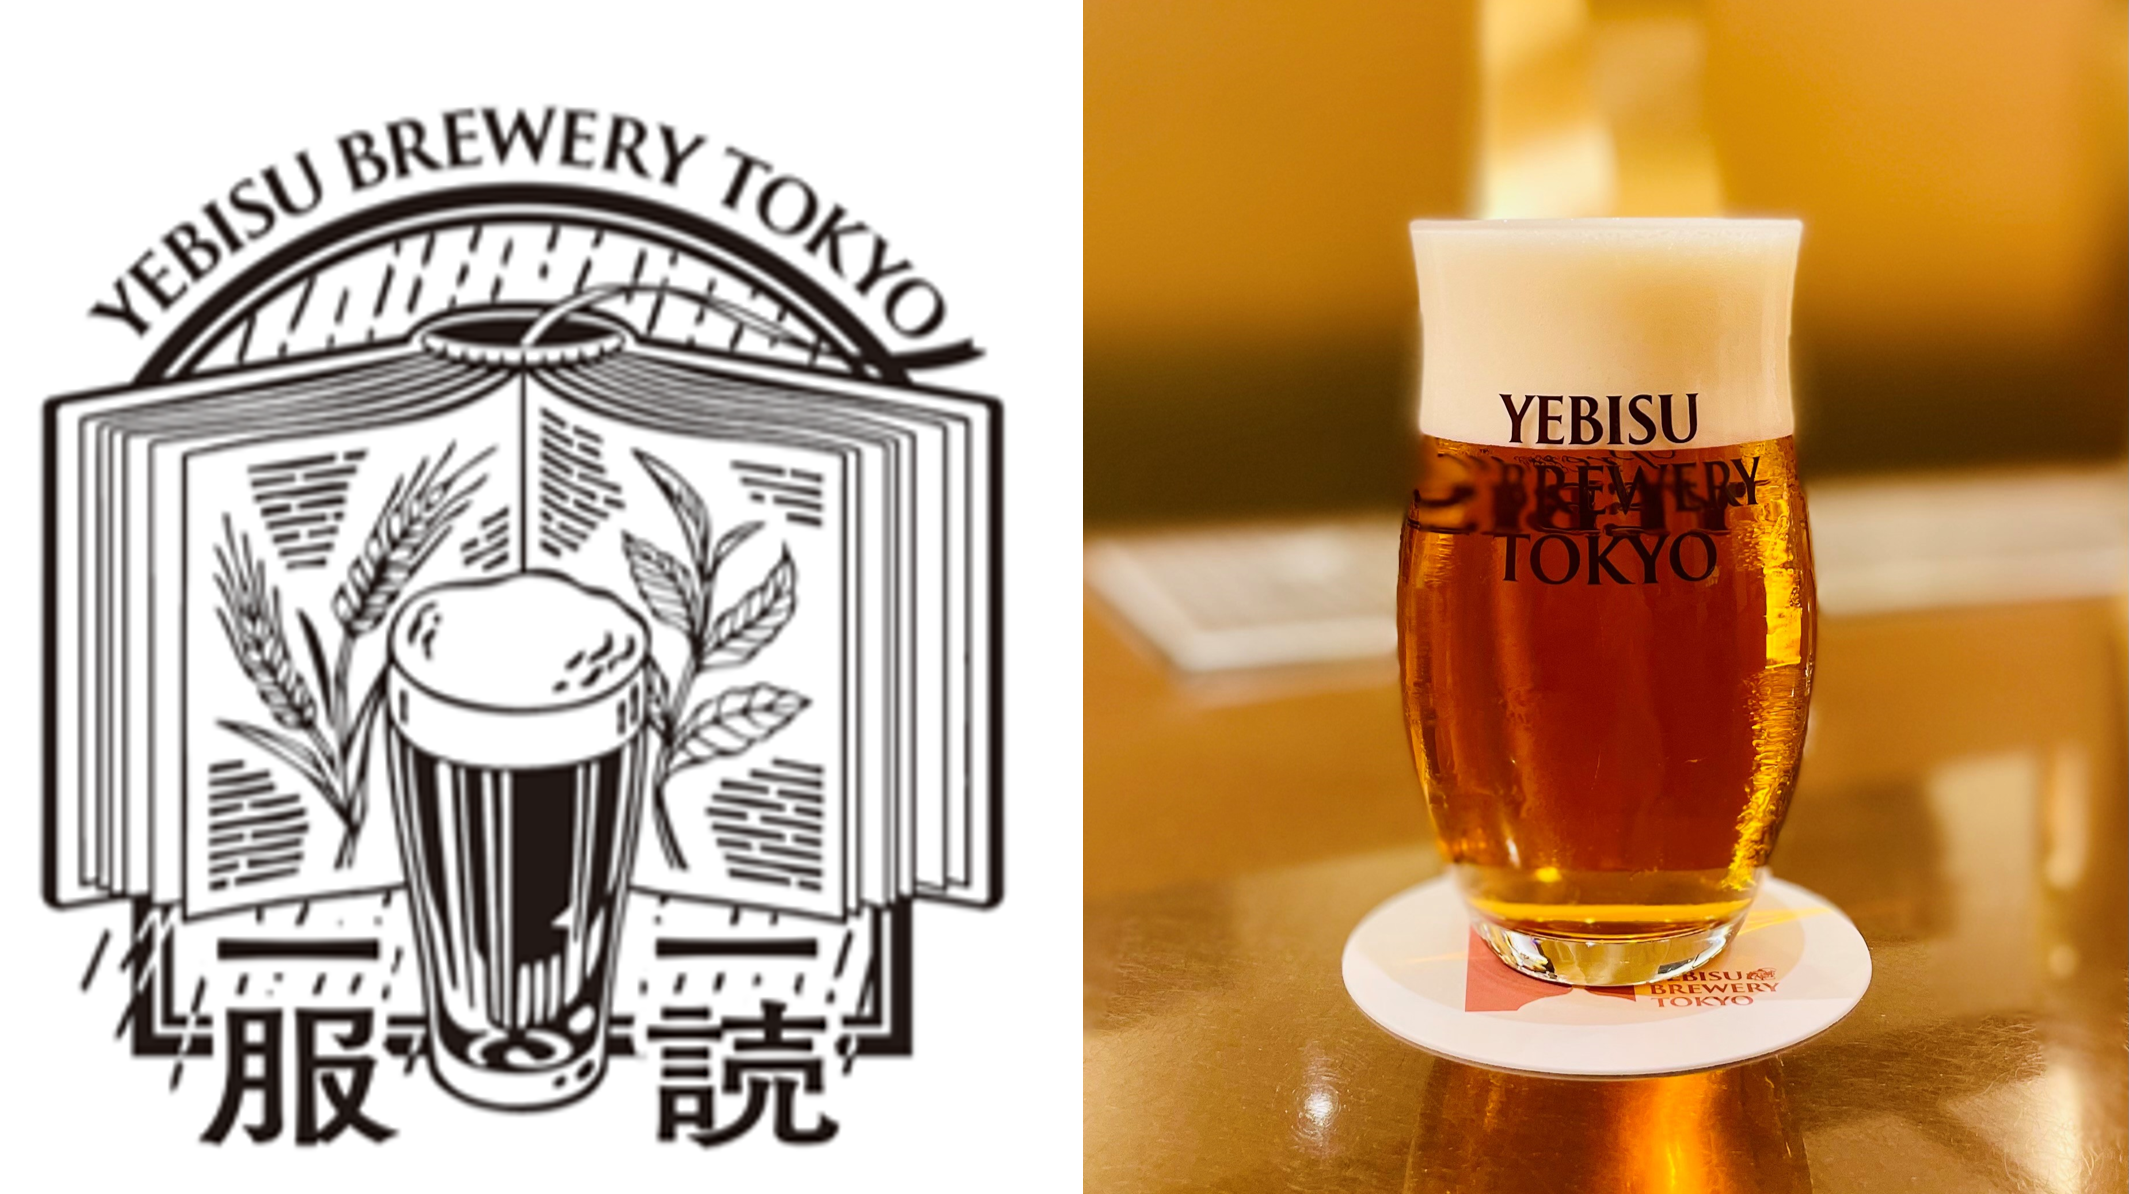 「YEBISU BREWERY TOKYO」でつくられた、ここでしか飲めない数量限定ビール「一読一服」6月12日発売